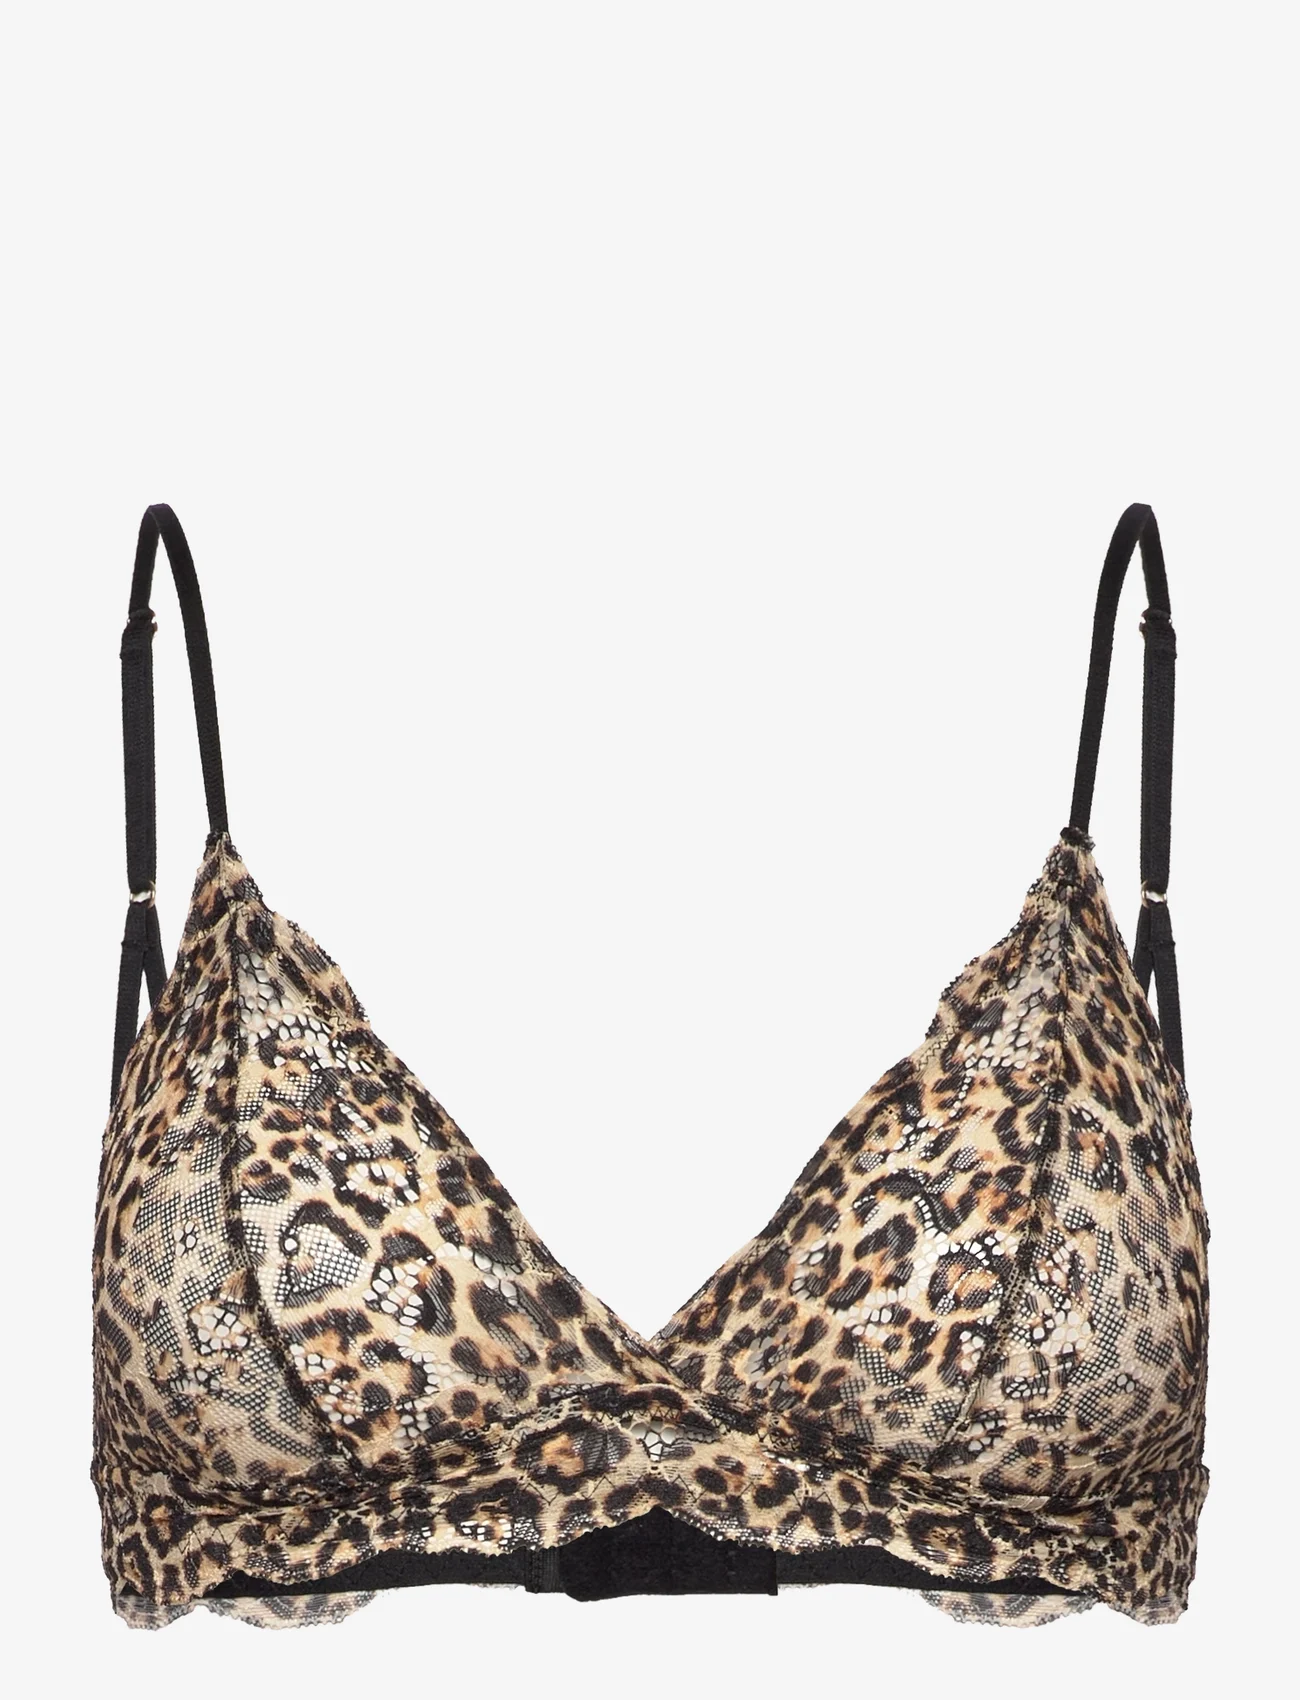 Understatement Underwear - Lace Triangle Bralette 001 - bralette - gold leopard - 0